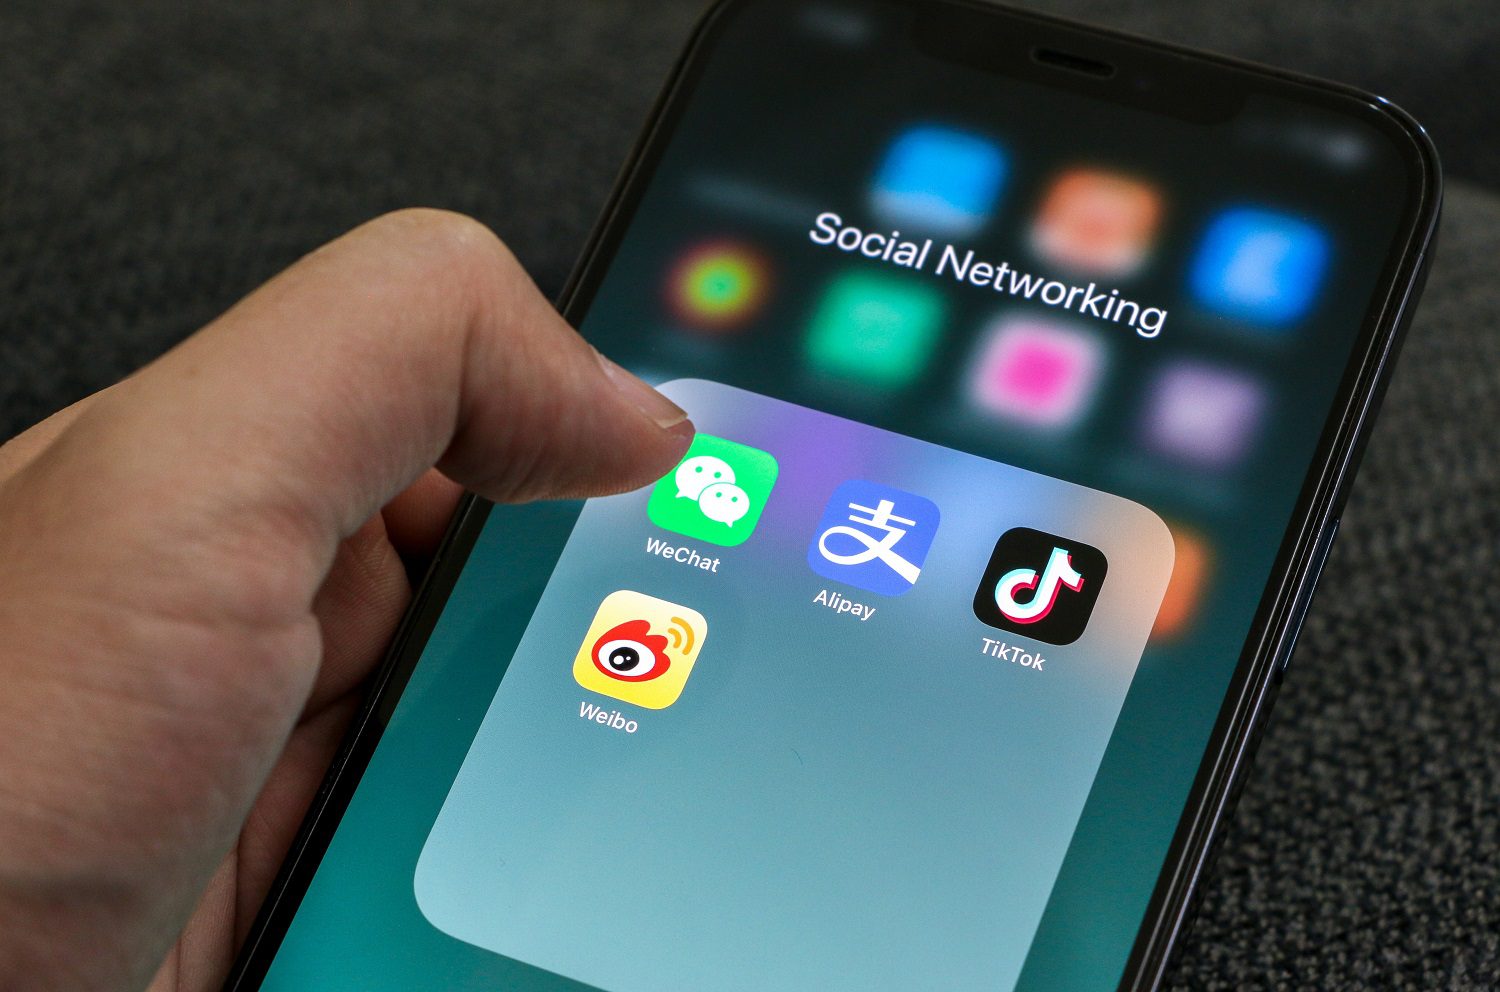 La mano de una persona sostiene un teléfono móvil y está a punto de lanzar una aplicación de redes sociales china, en la que se muestran los iconos de WeChat, Alipay, TikTok y Weibo.